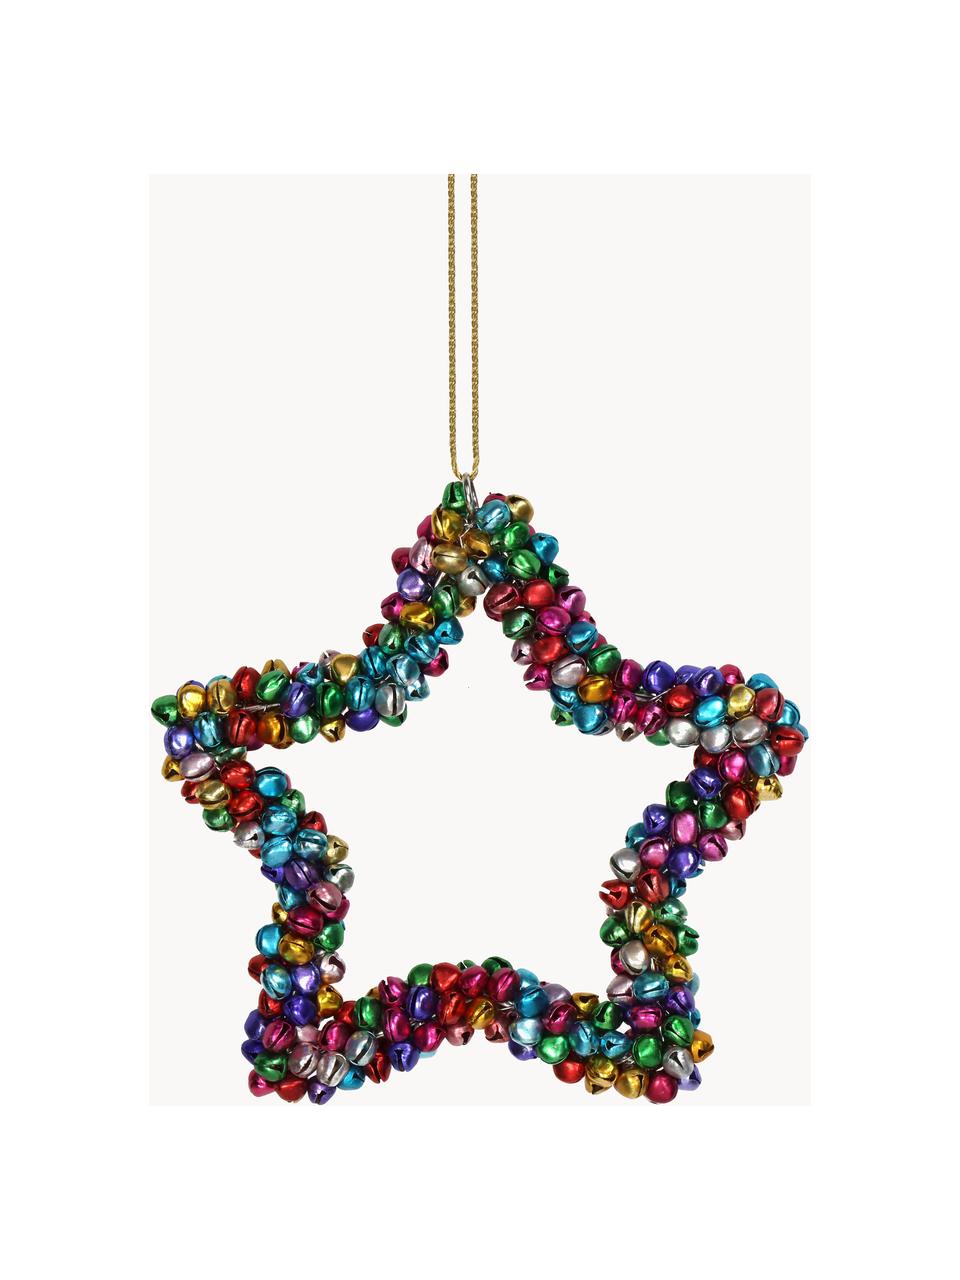 Kerstboomhanger Star met belletjes, Gecoat metaal, Meerkleurig, B 14 x H 14 cm